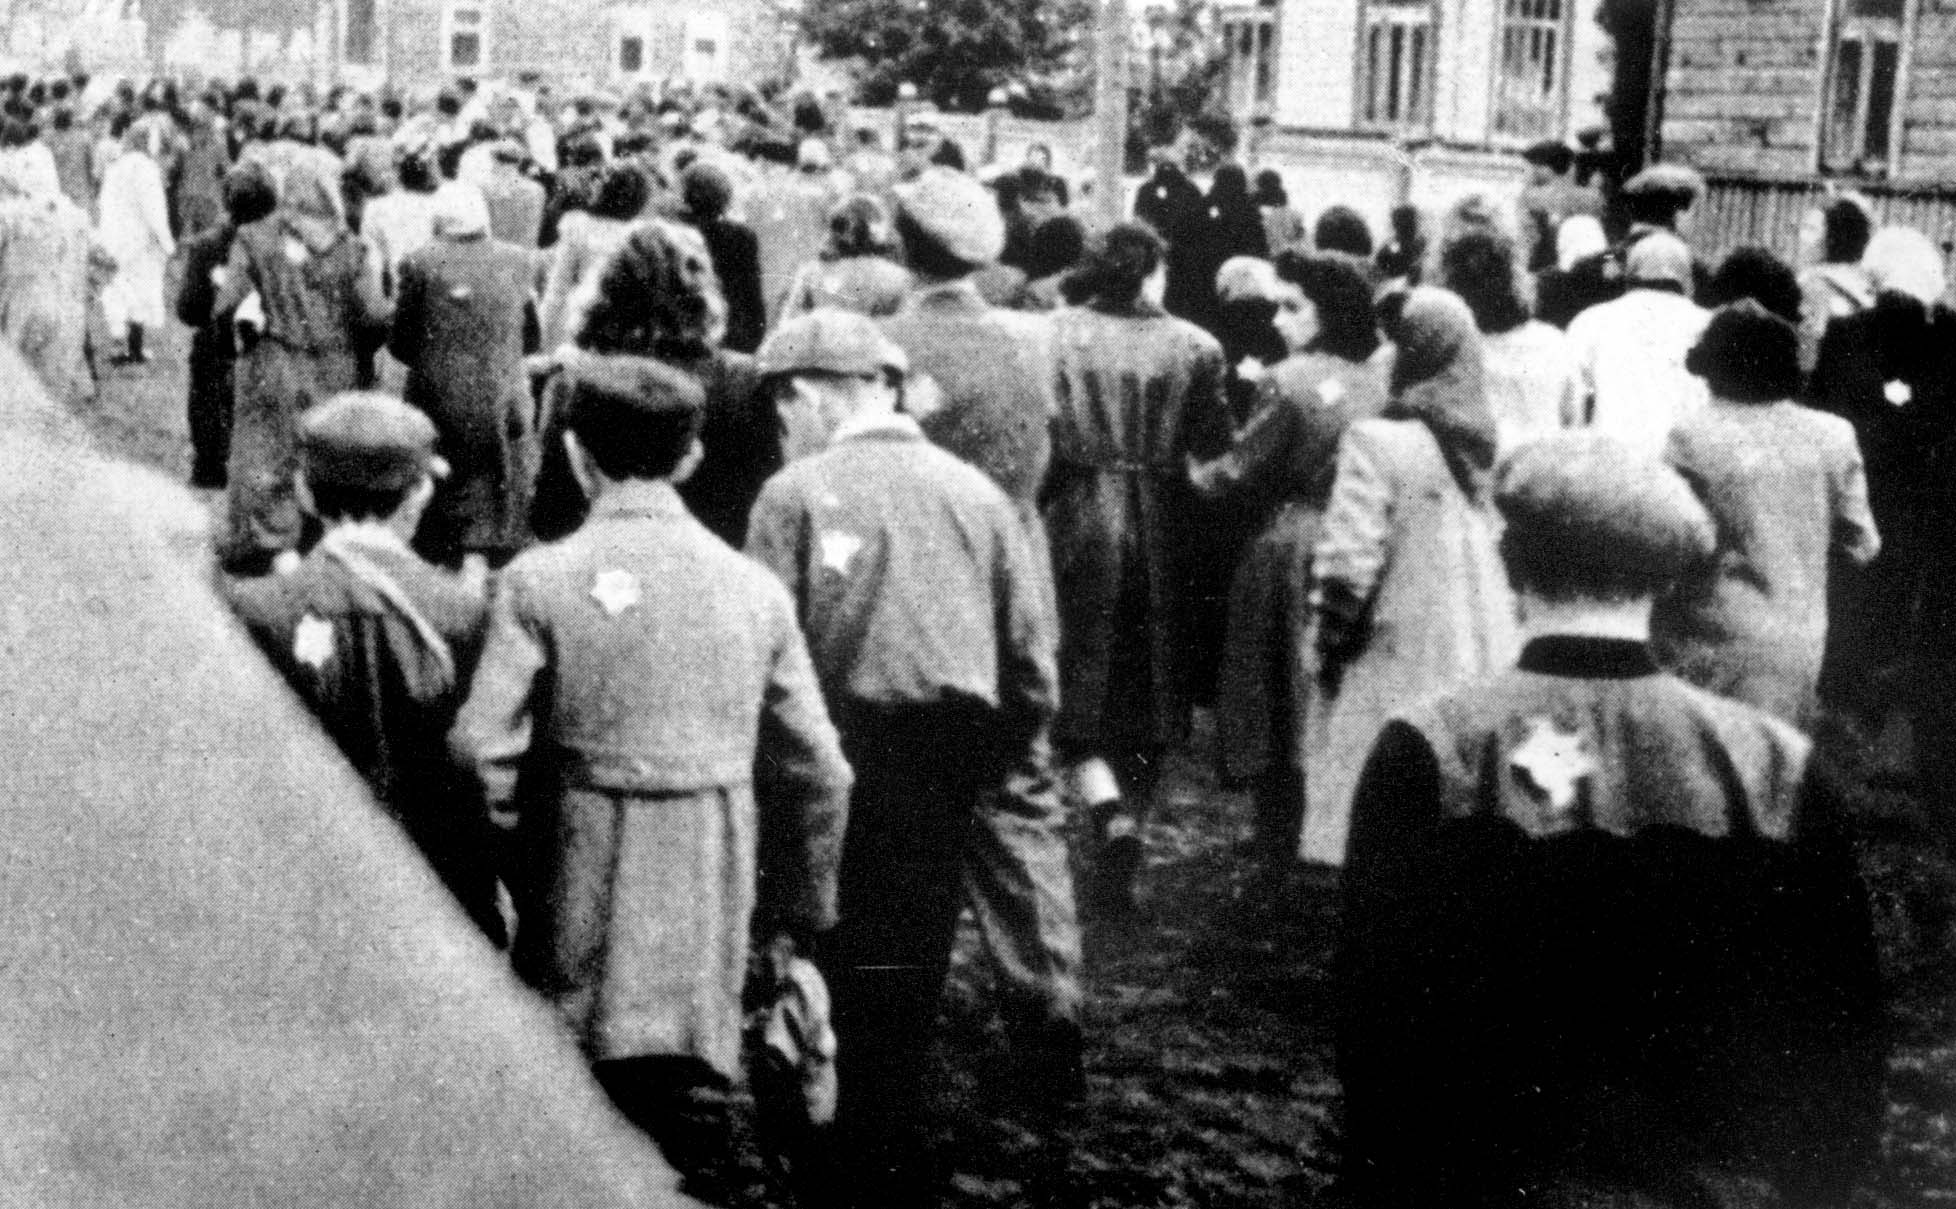 Регистрация евреев Одессы, октябрь 1941 г. Фото © Яд Вашем. Мемориальный комплекс истории холокоста